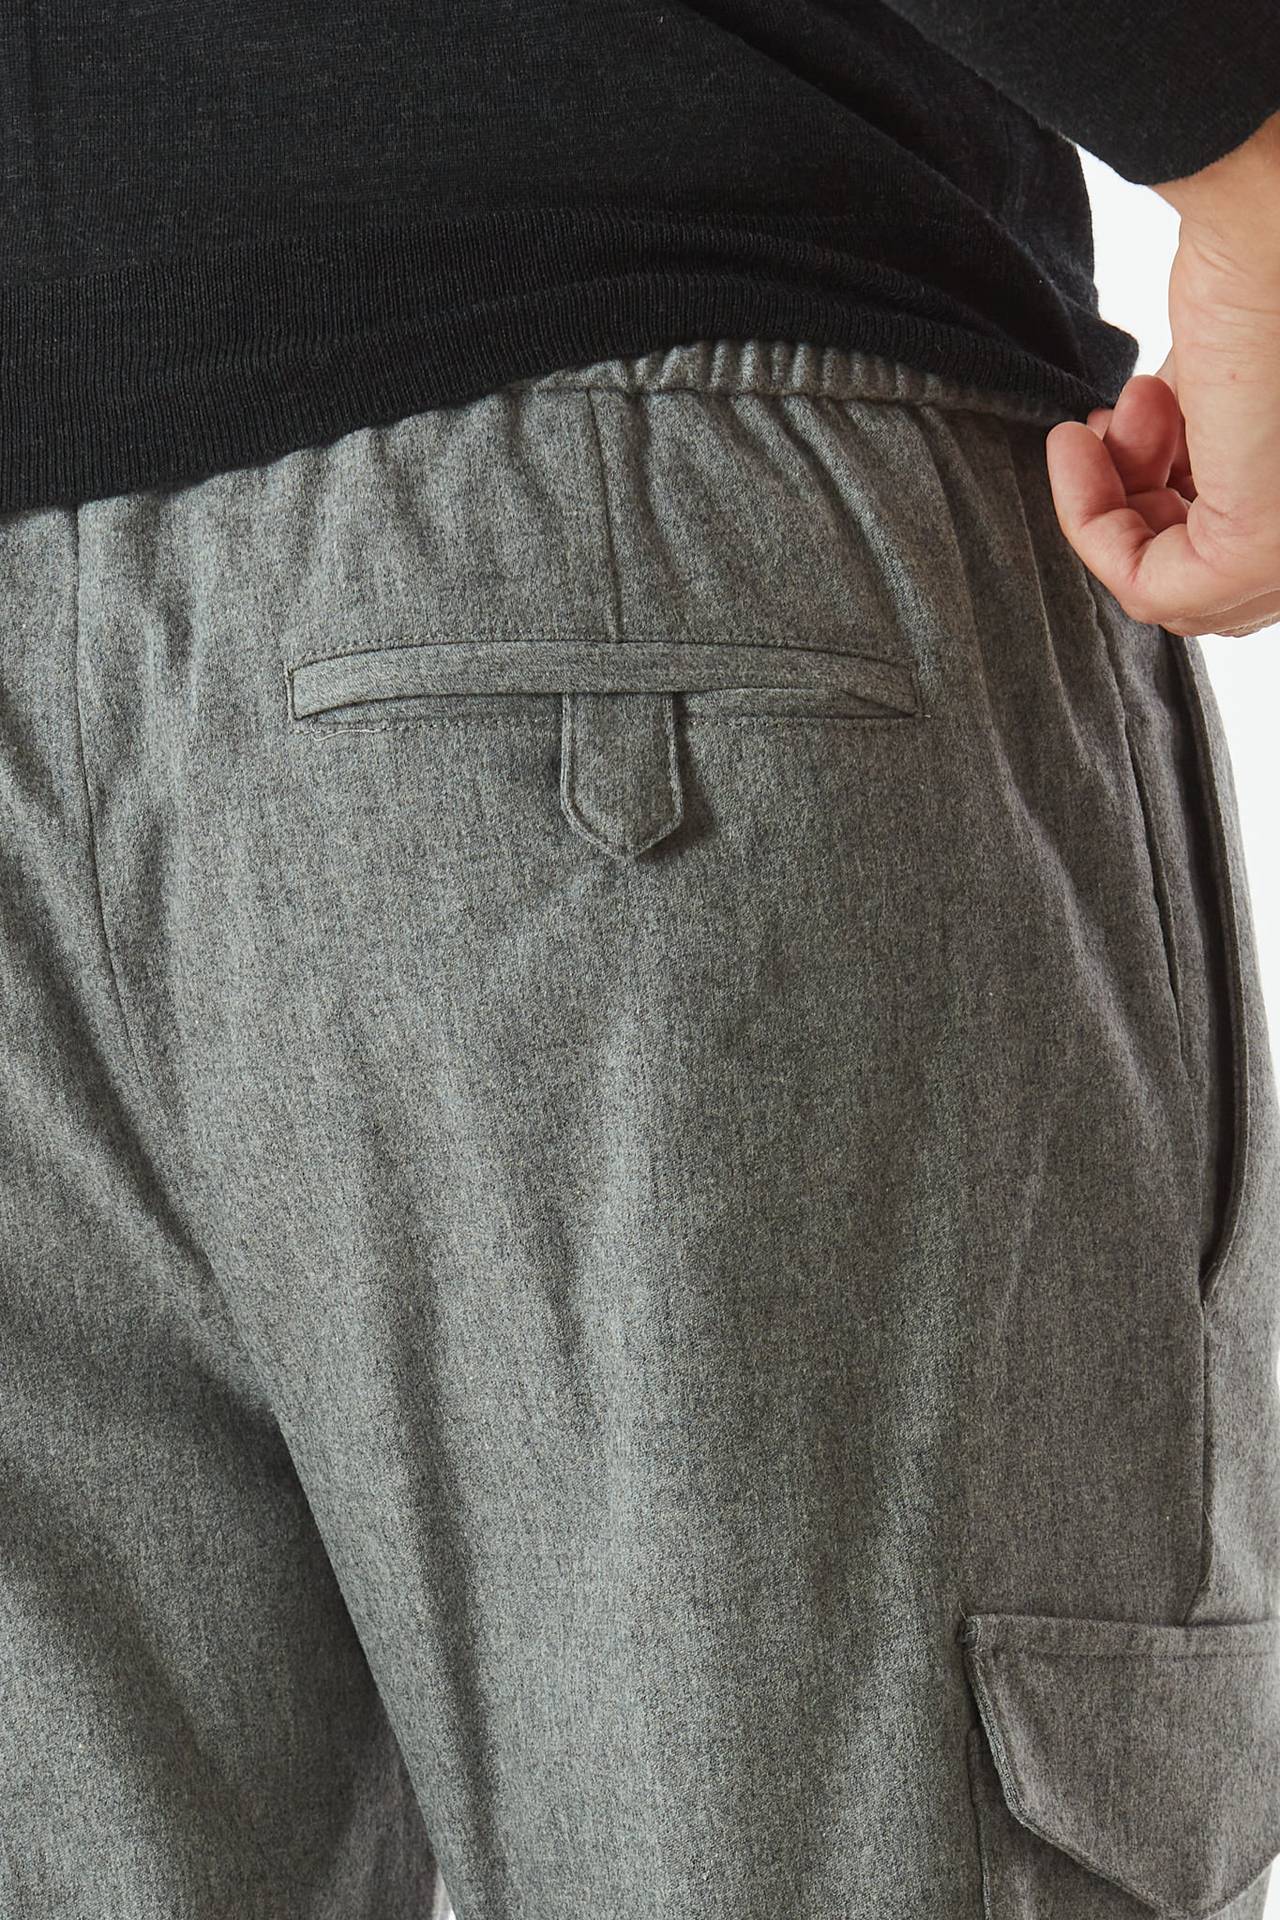 Pantalone SOFT FIT in flanella grigio 